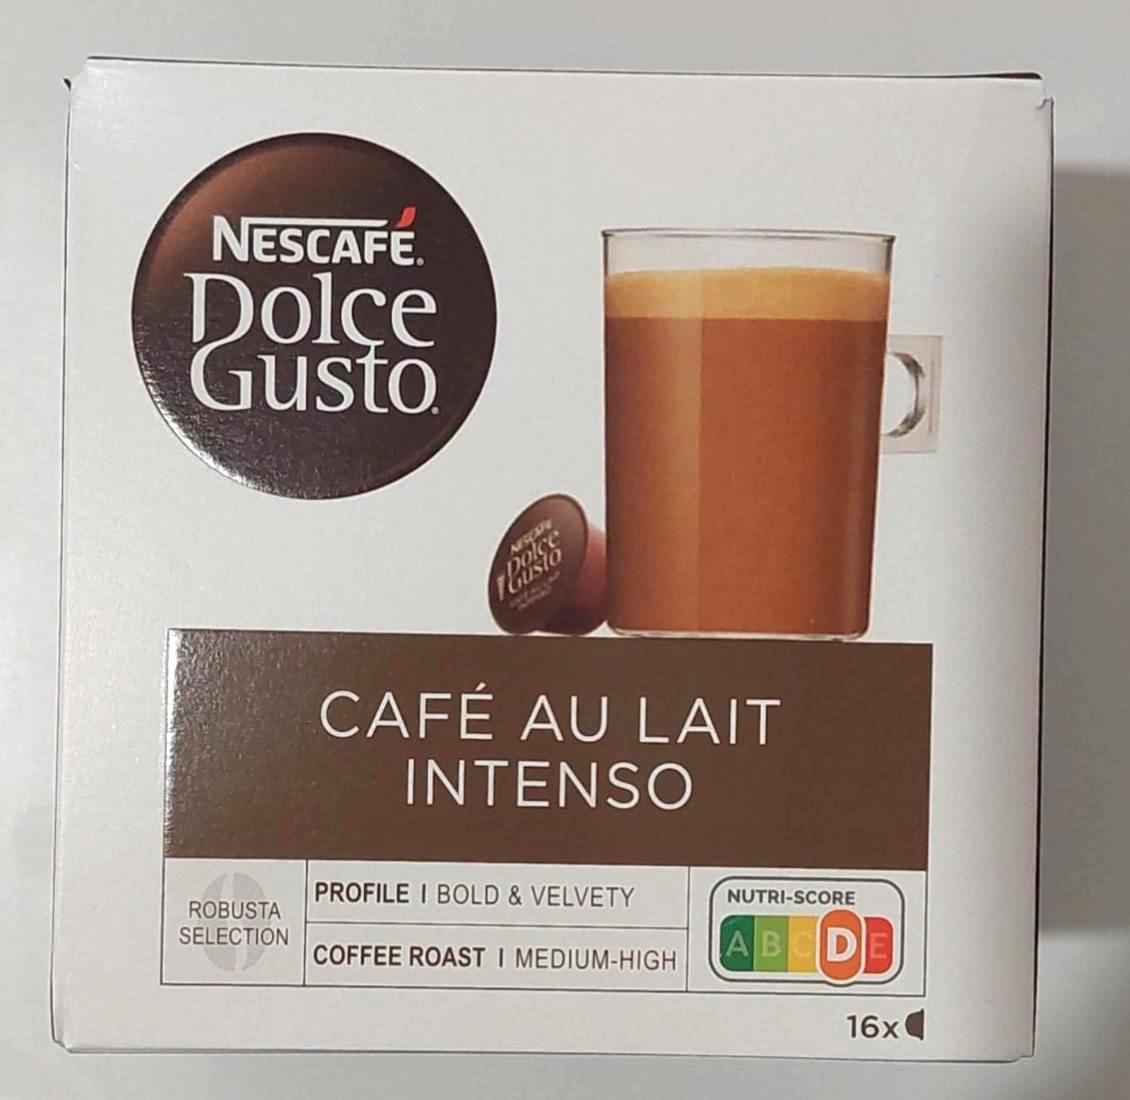 Képek - Dolce gusto Café au lait intenso Nescafé